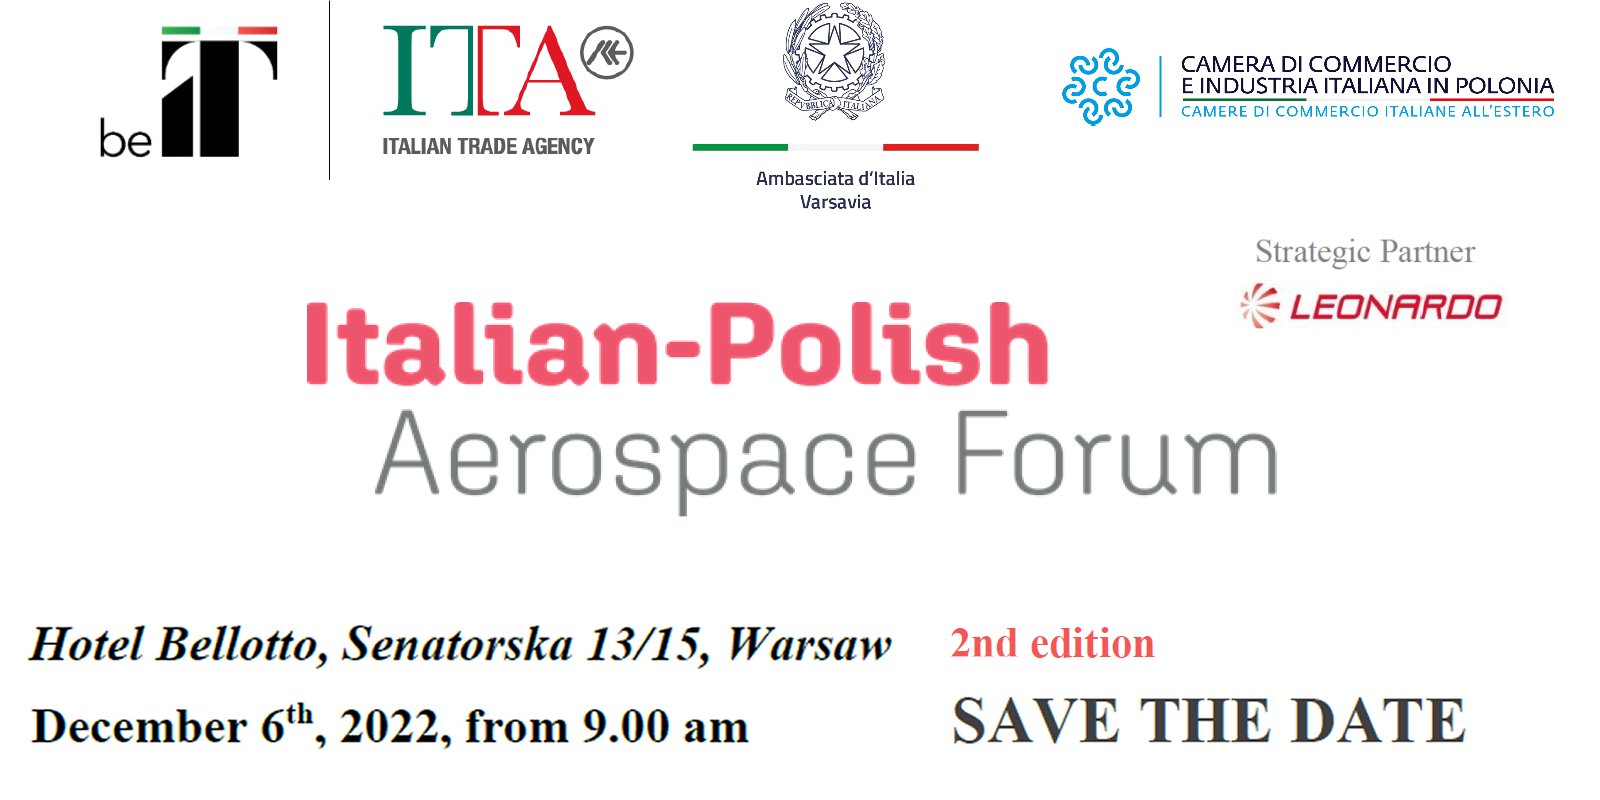 AeroSpazio Forum 2022